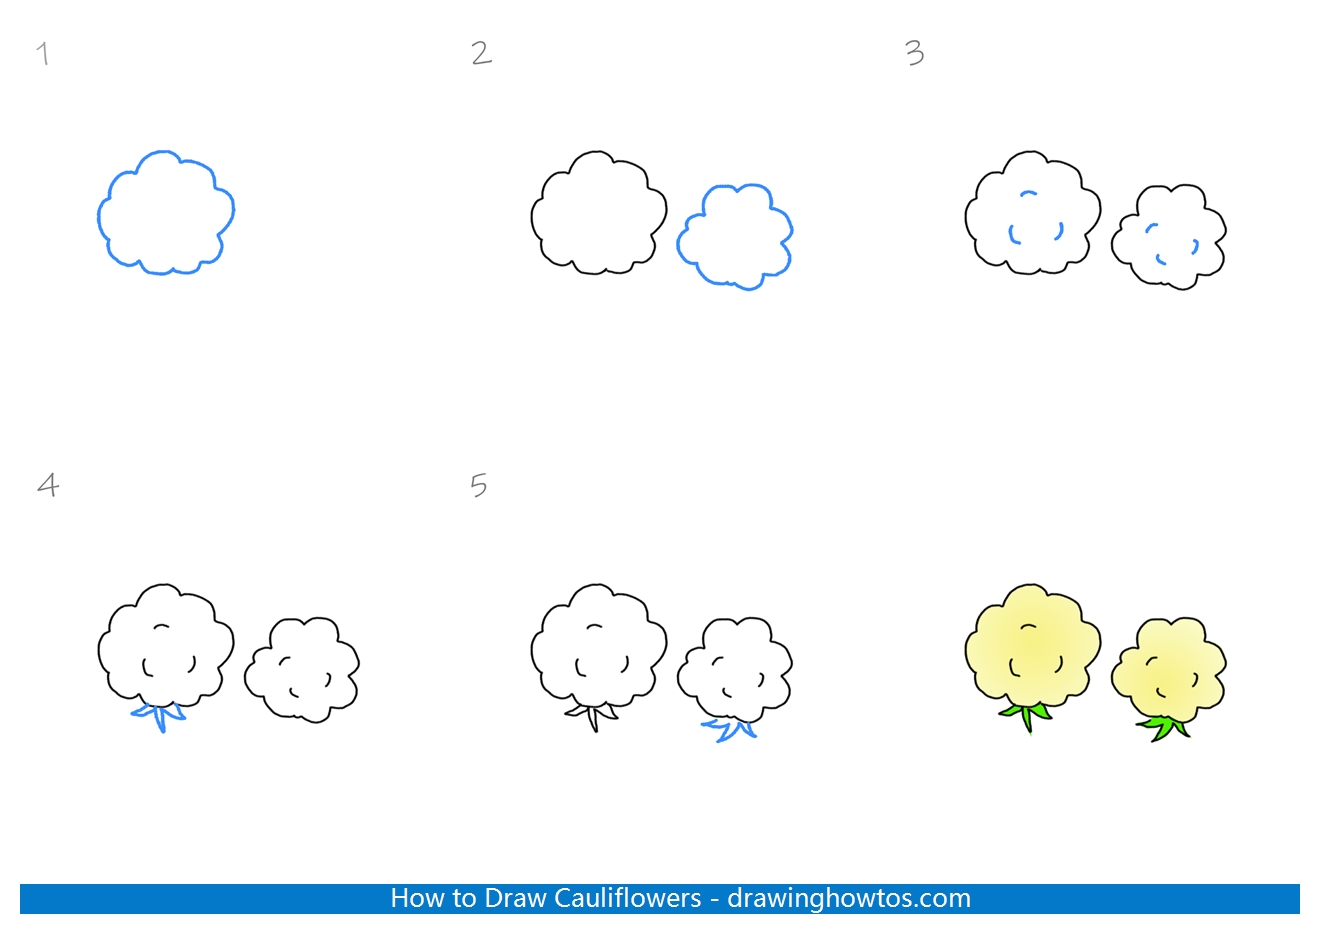 How to Draw Cauliflower Step by Step